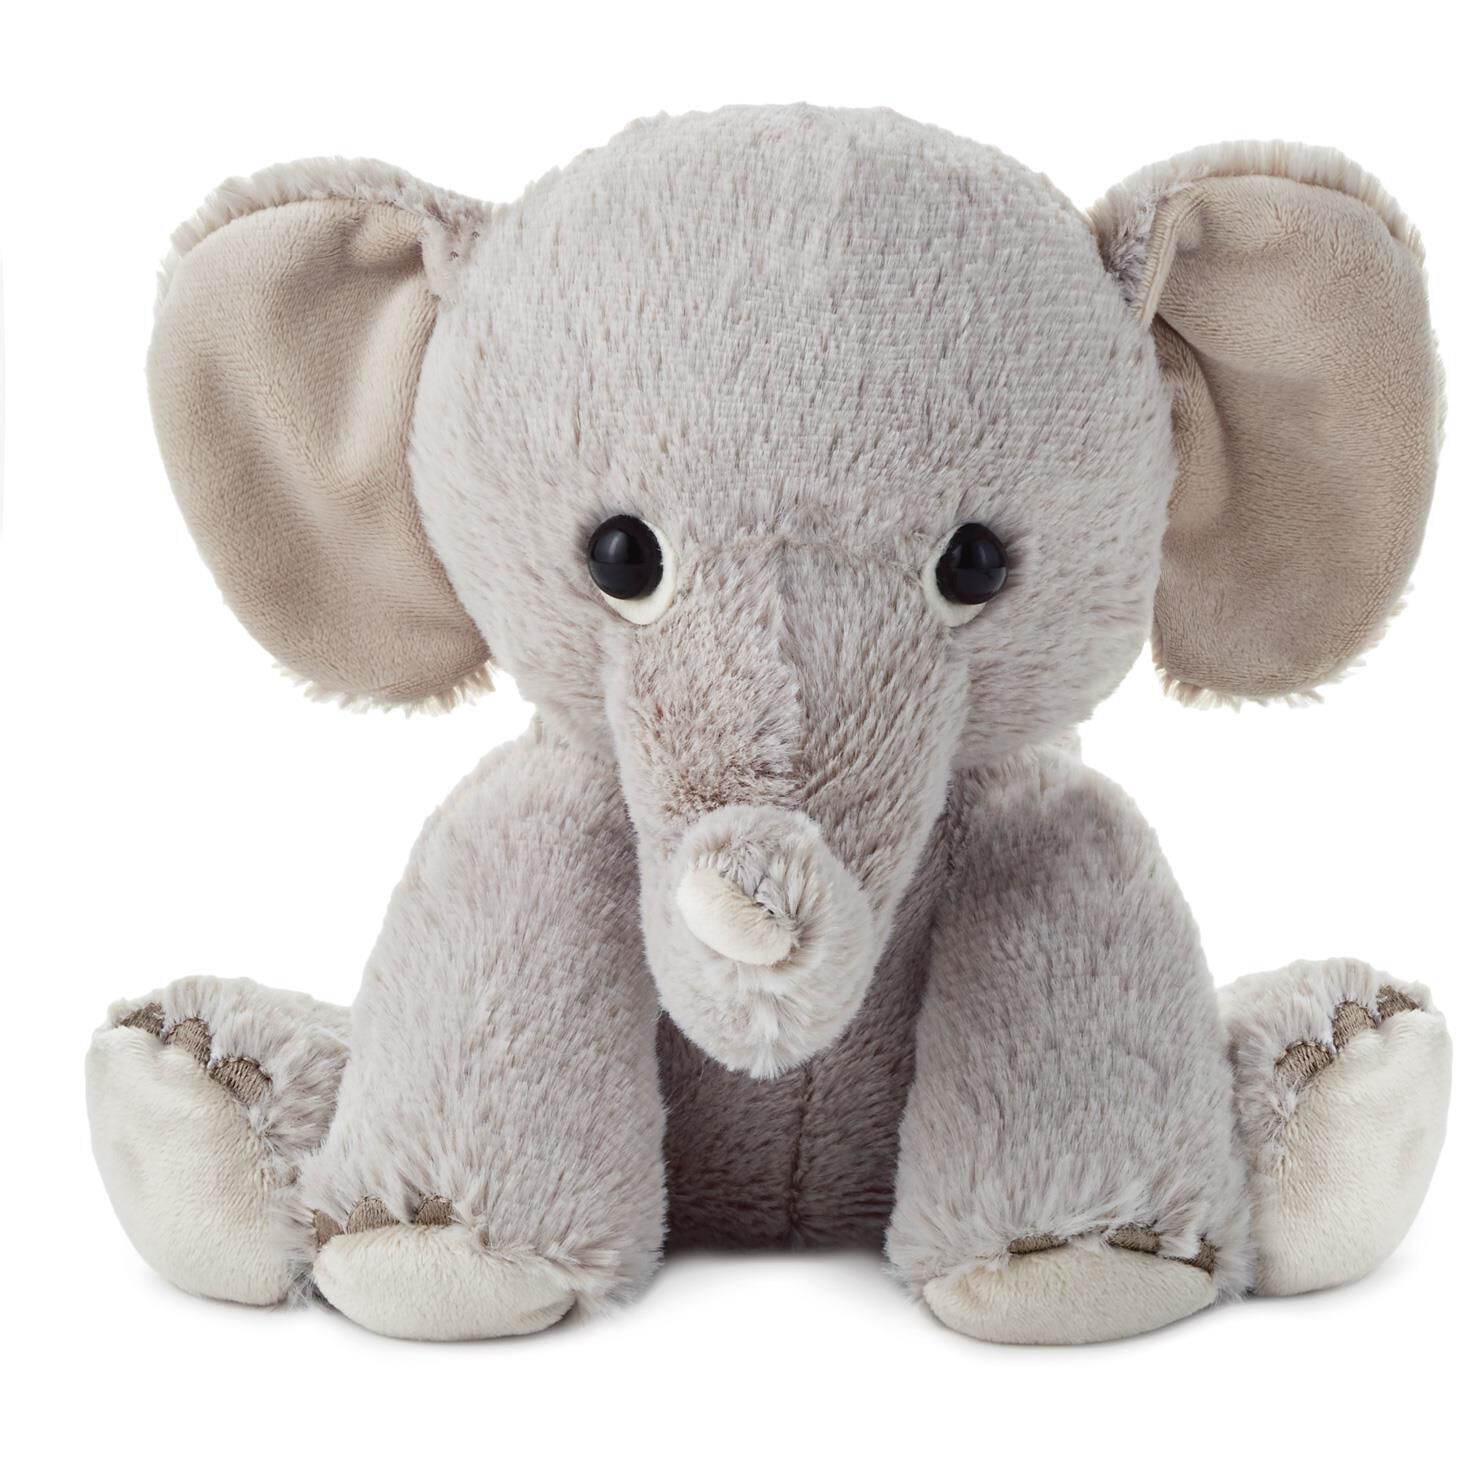 baby elephant plush